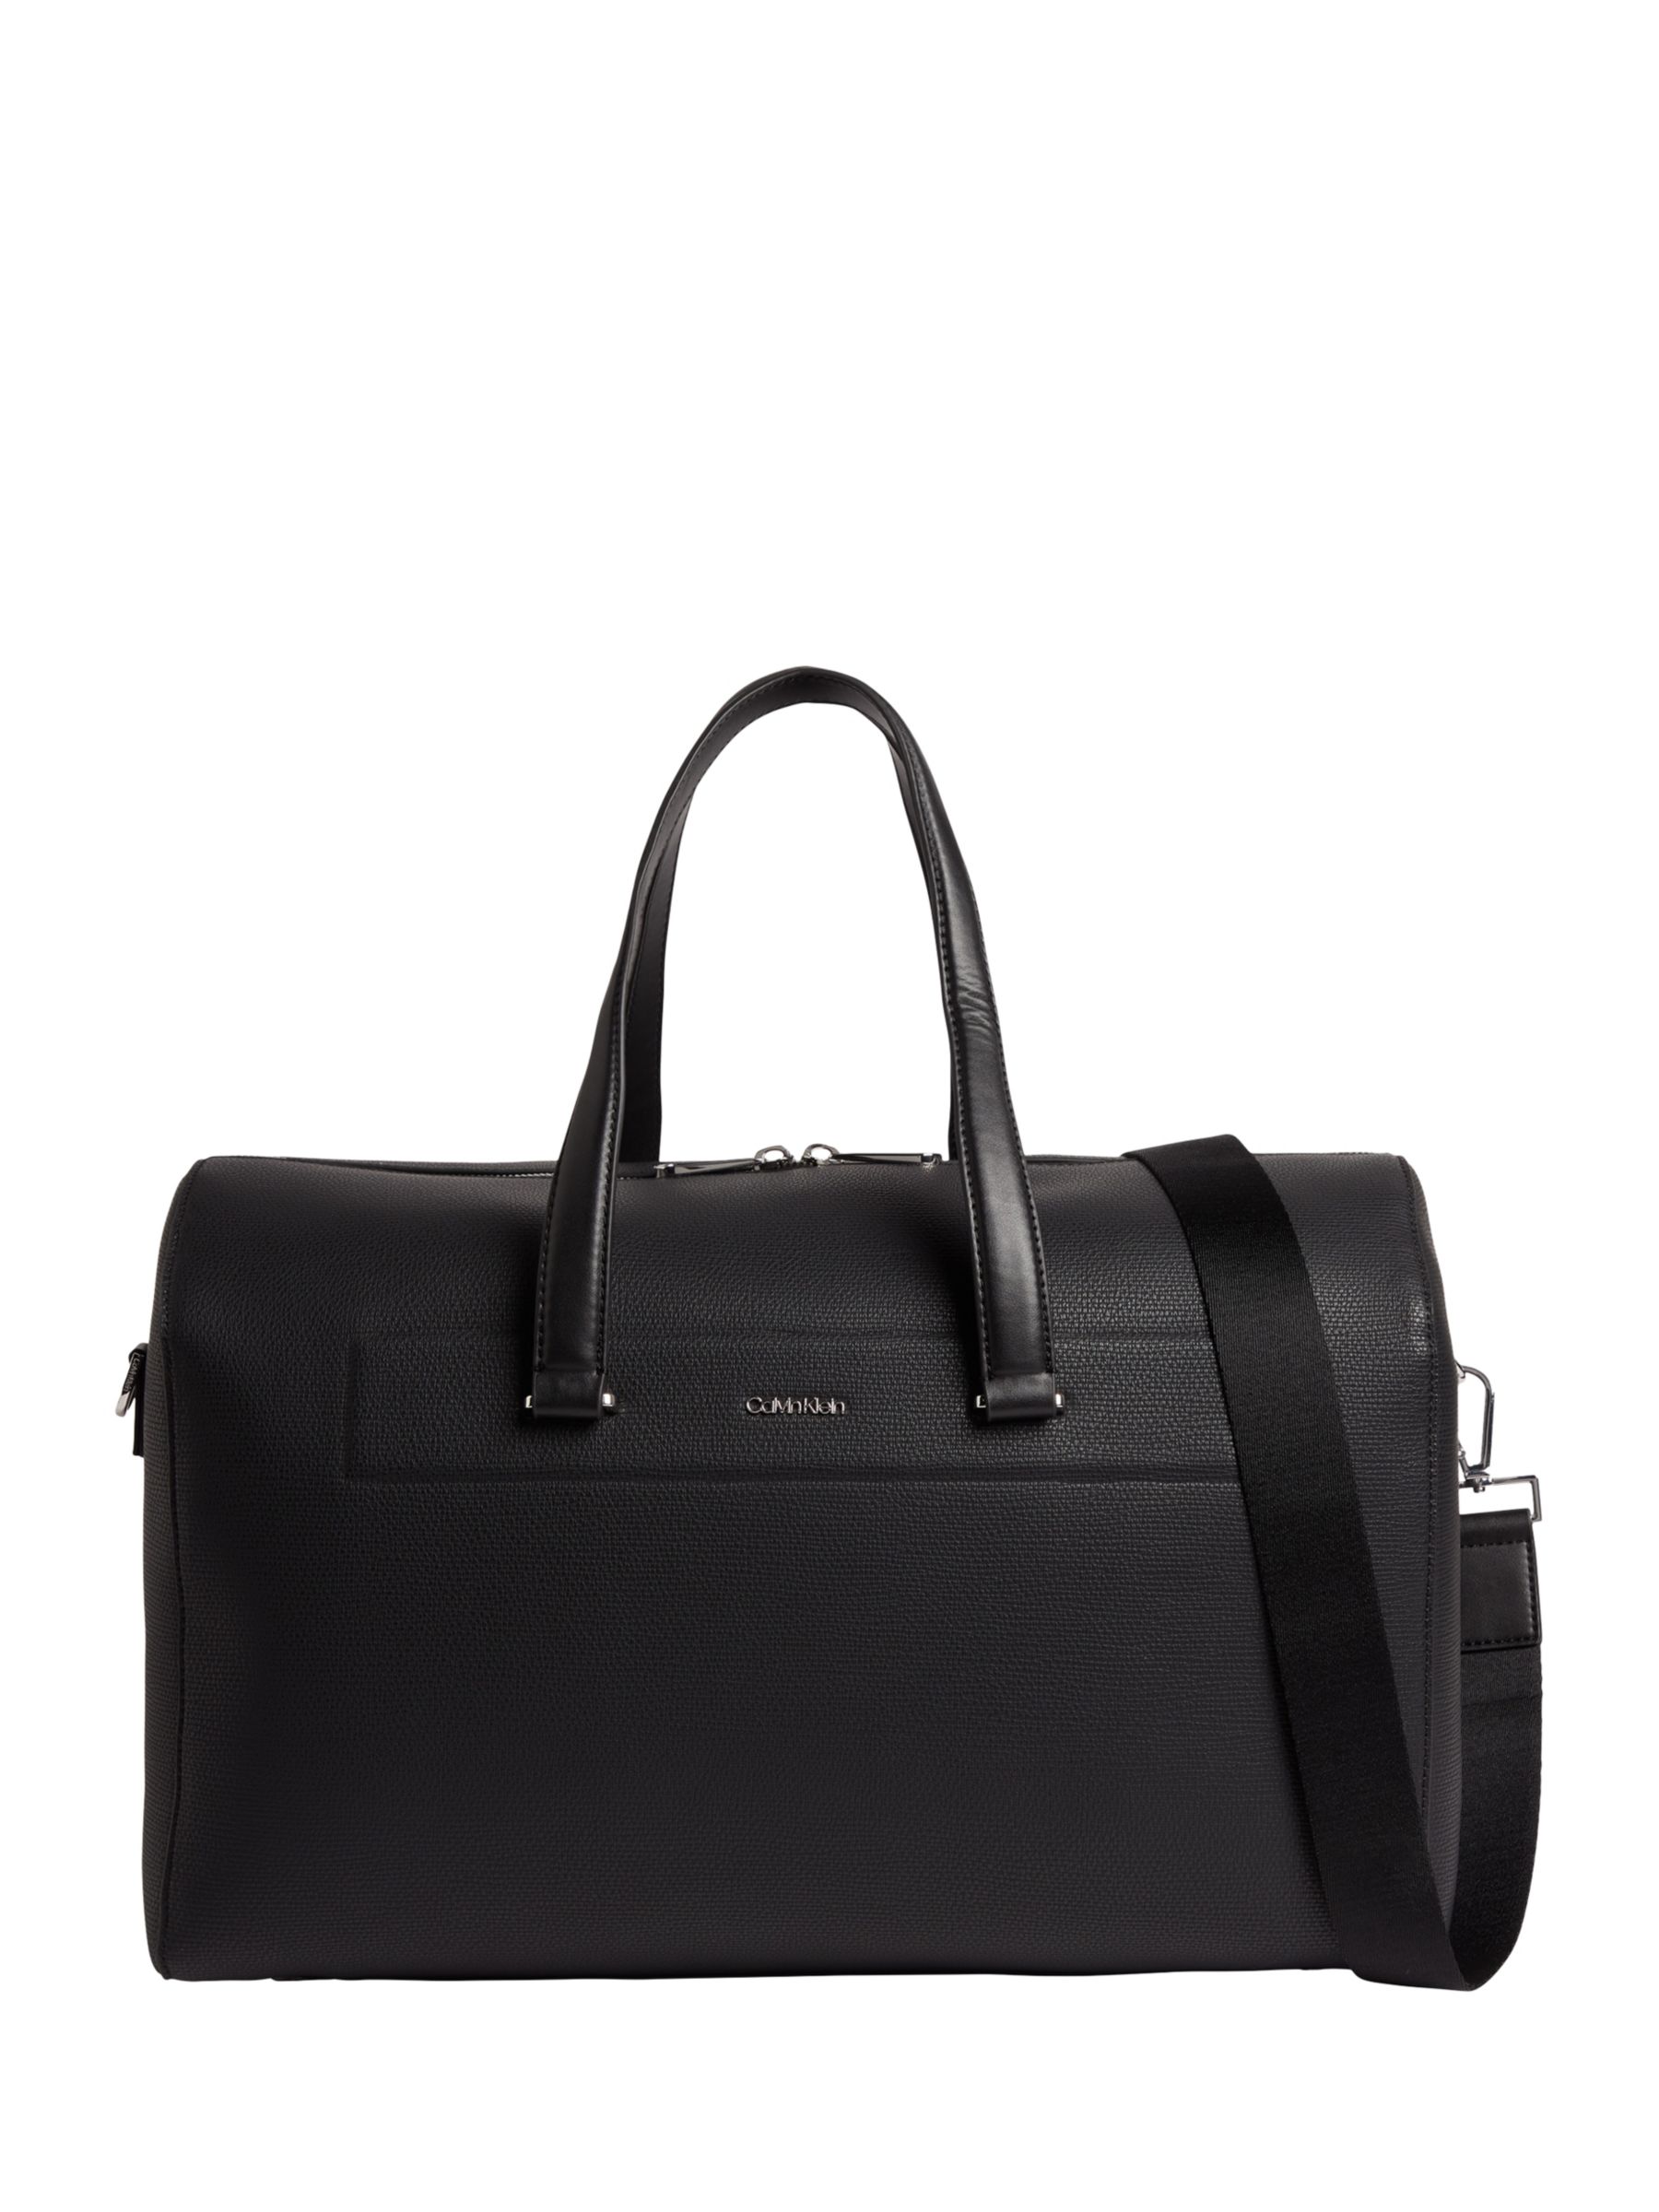 Calvin Klein Weekender Holdall Bag, Black at John Lewis & Partners